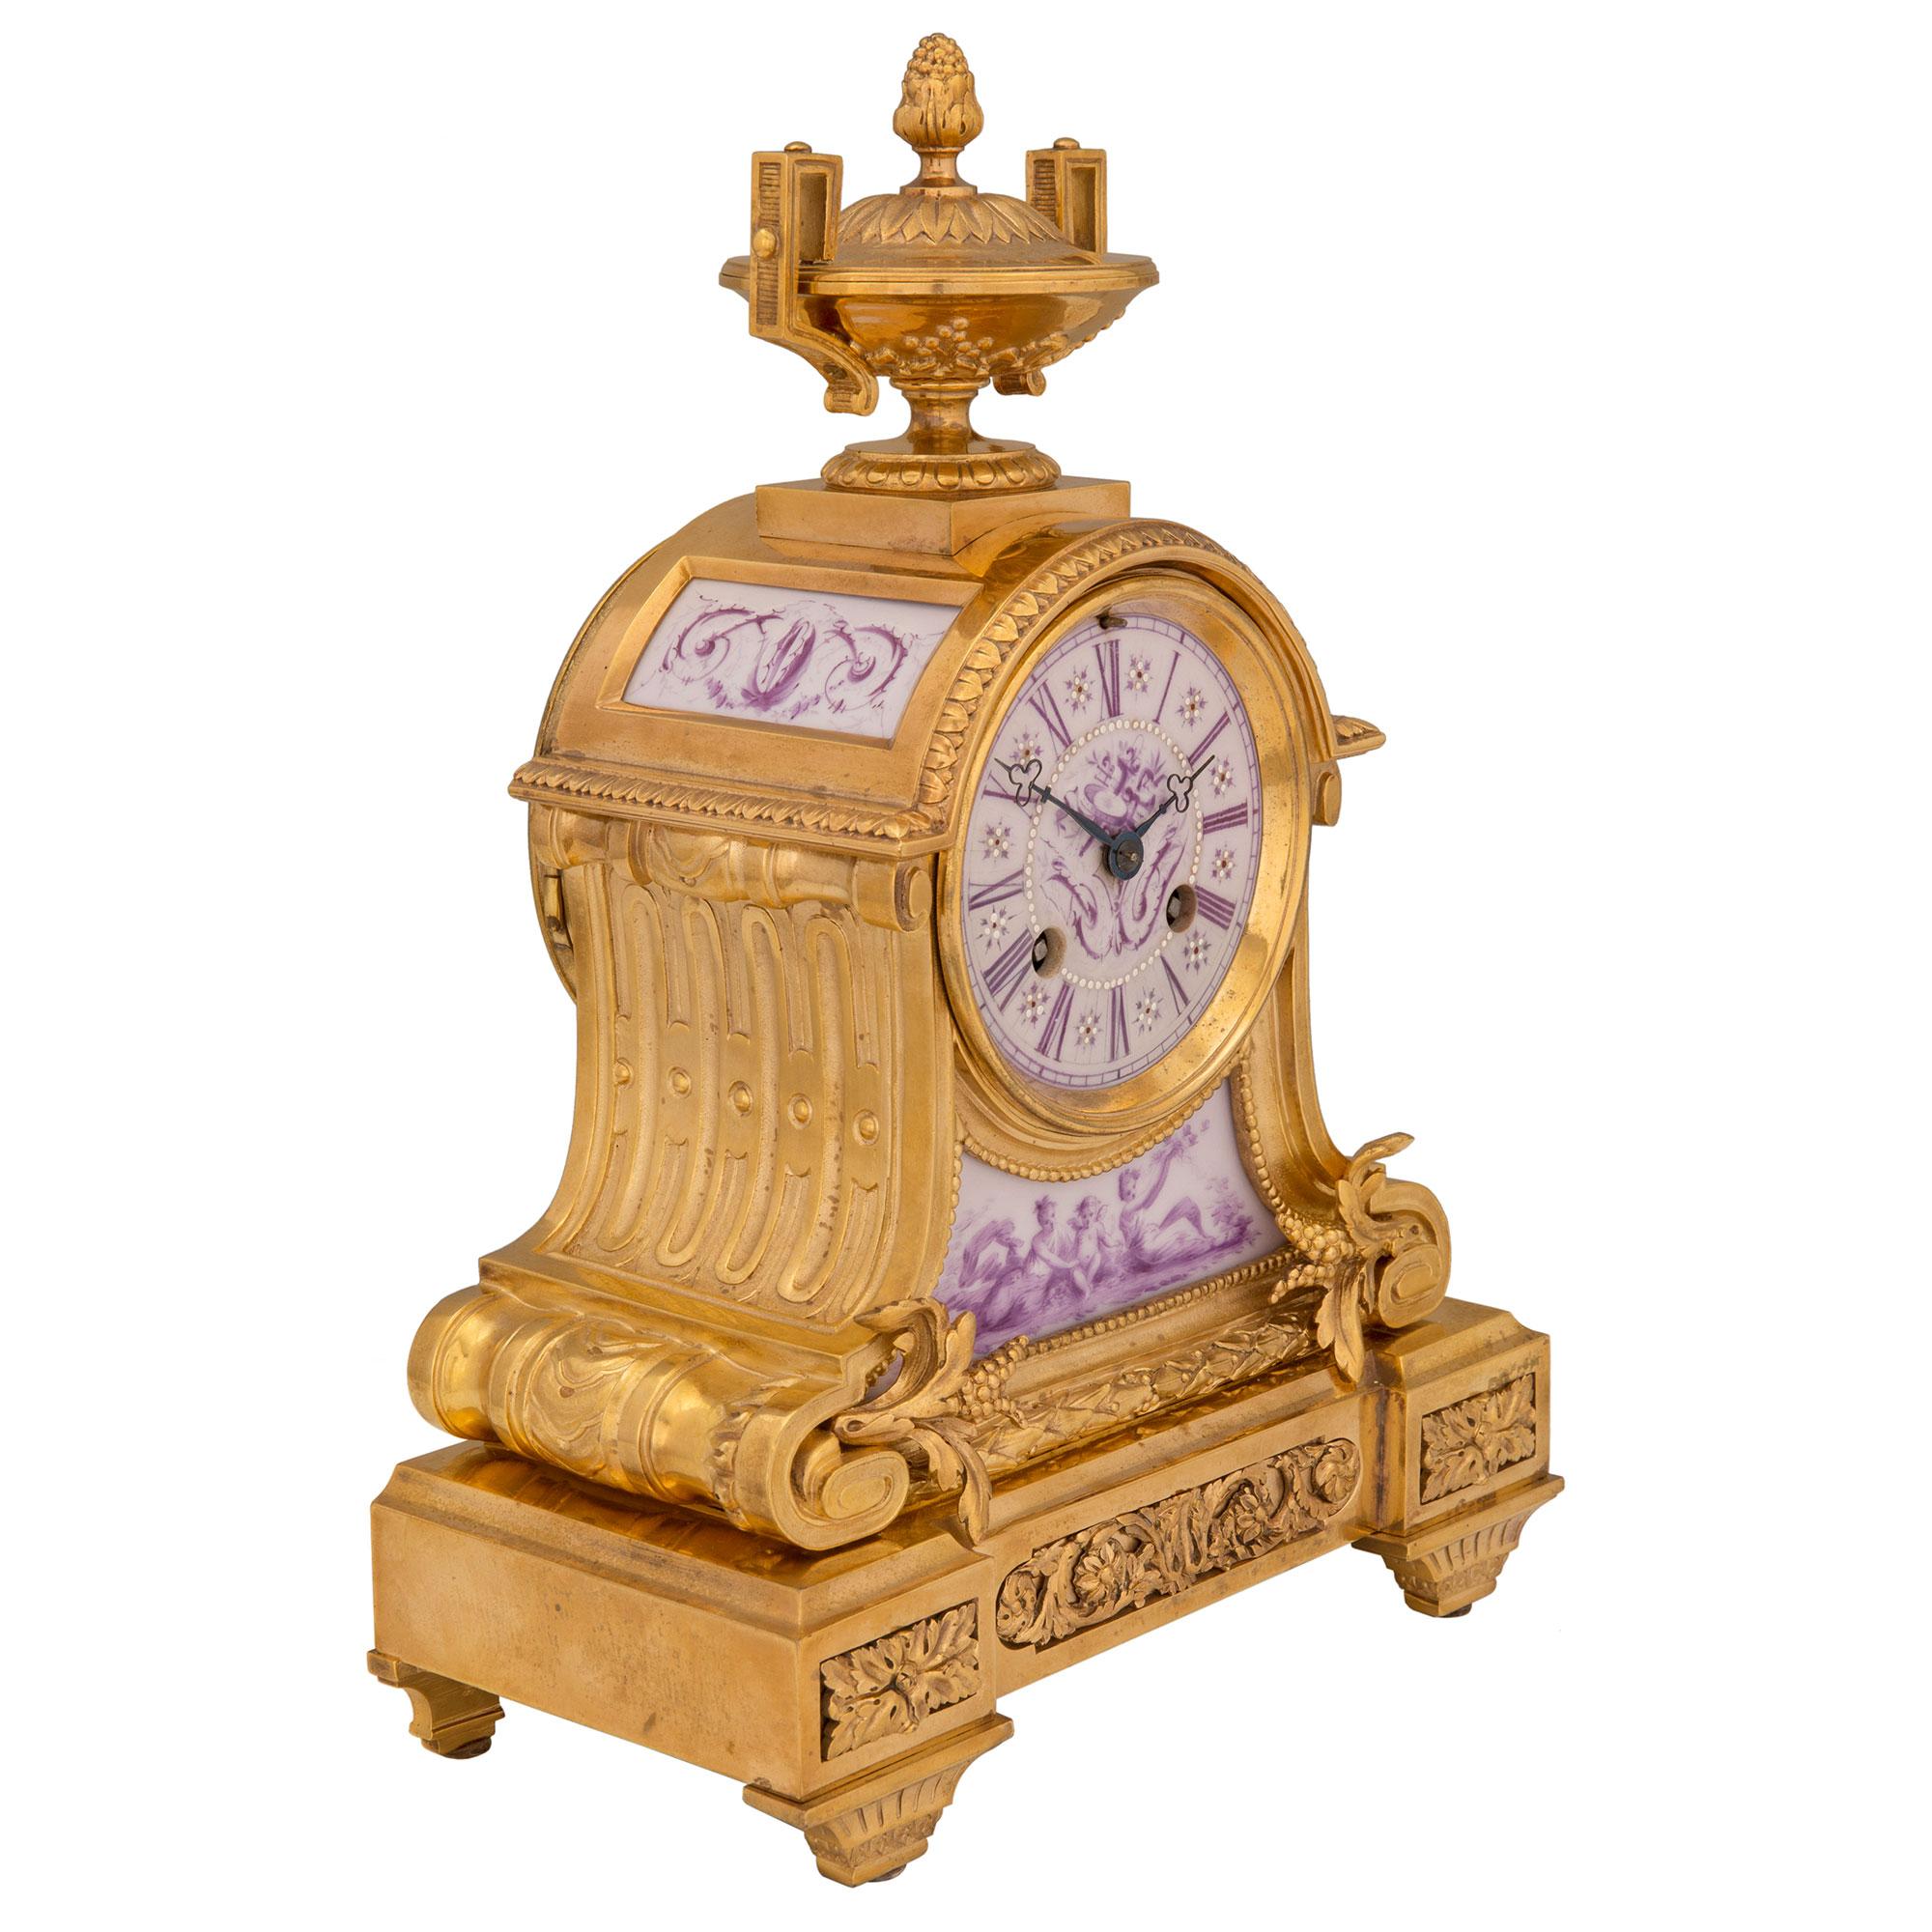 Une élégante pendule française du 19ème siècle, de style Louis XVI, en bronze doré et porcelaine. L'horloge de petite taille est surélevée par de fins pieds fuselés cannelés, sous des rosettes en bloc richement ciselées, centrées sur une belle